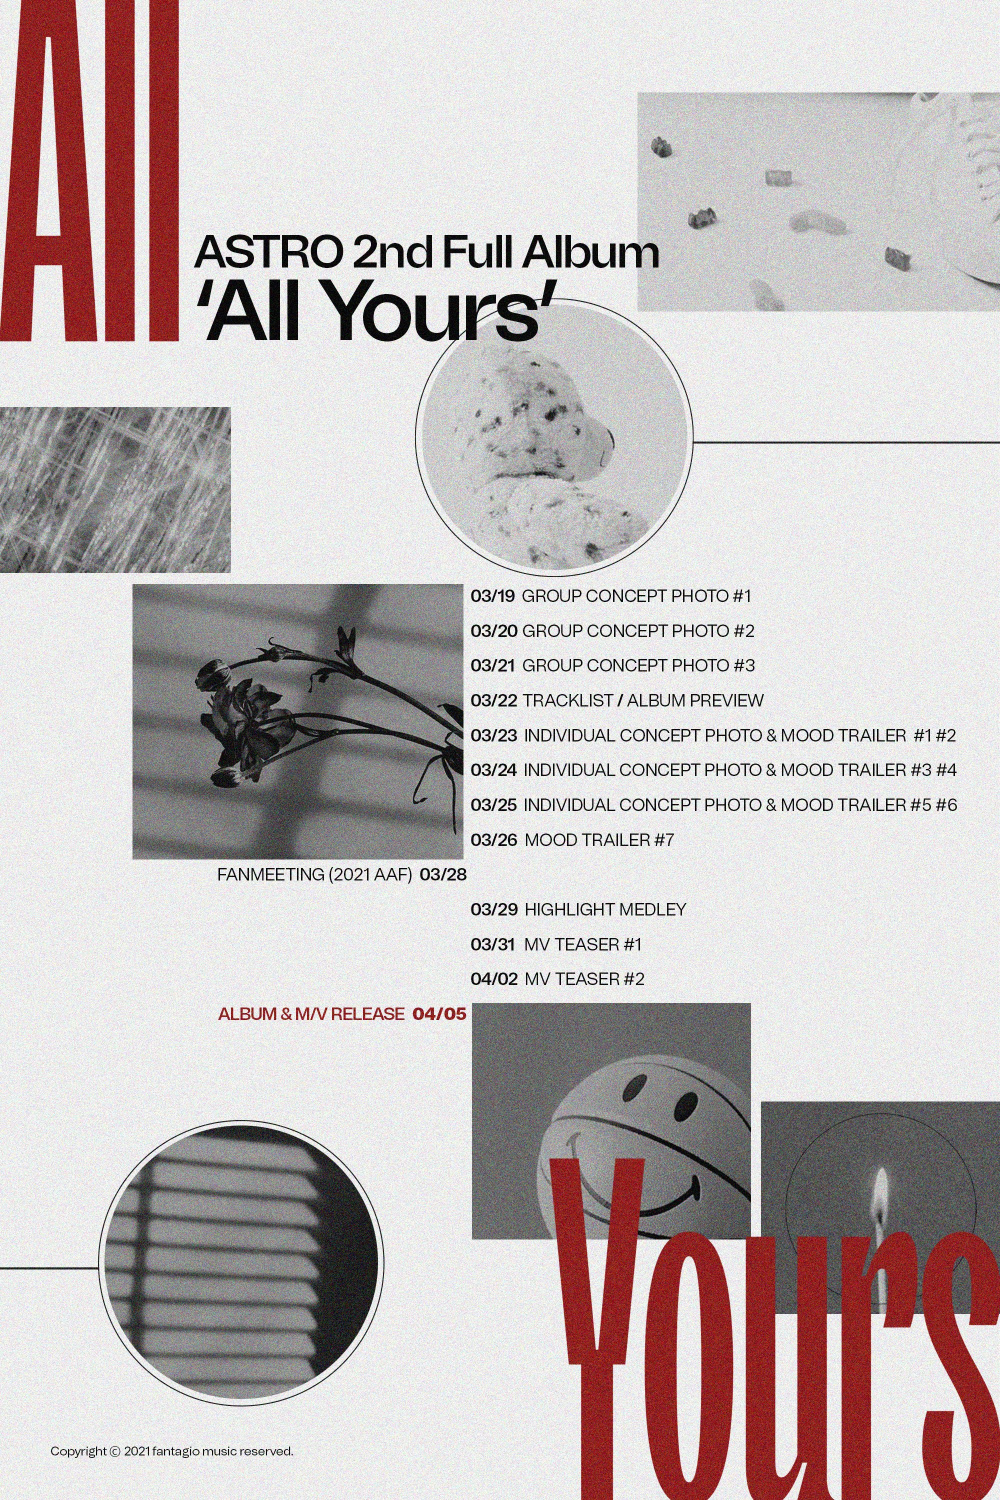 [Камбэк] ASTRO альбом "All Yours": музыкальный клип "One"